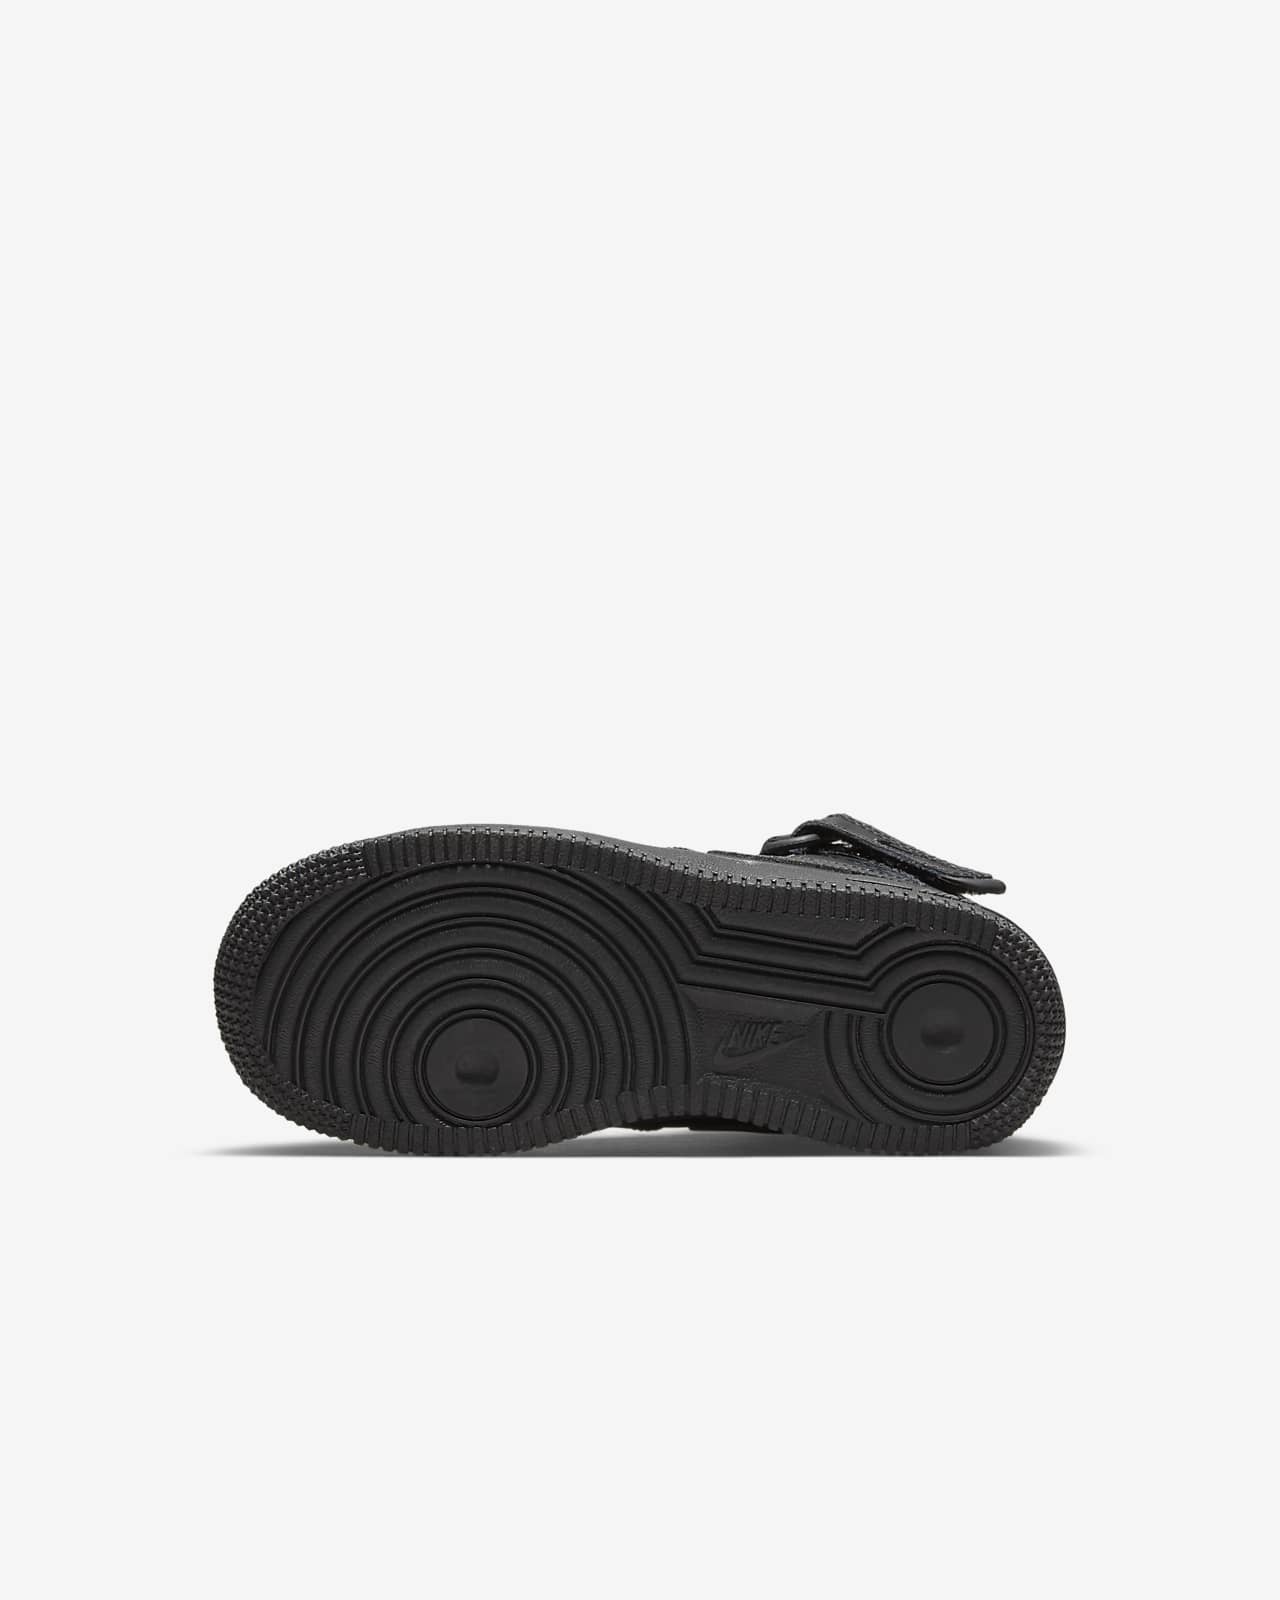 Nike Force 1 Little Kids' Shoe Size 10.5, Black